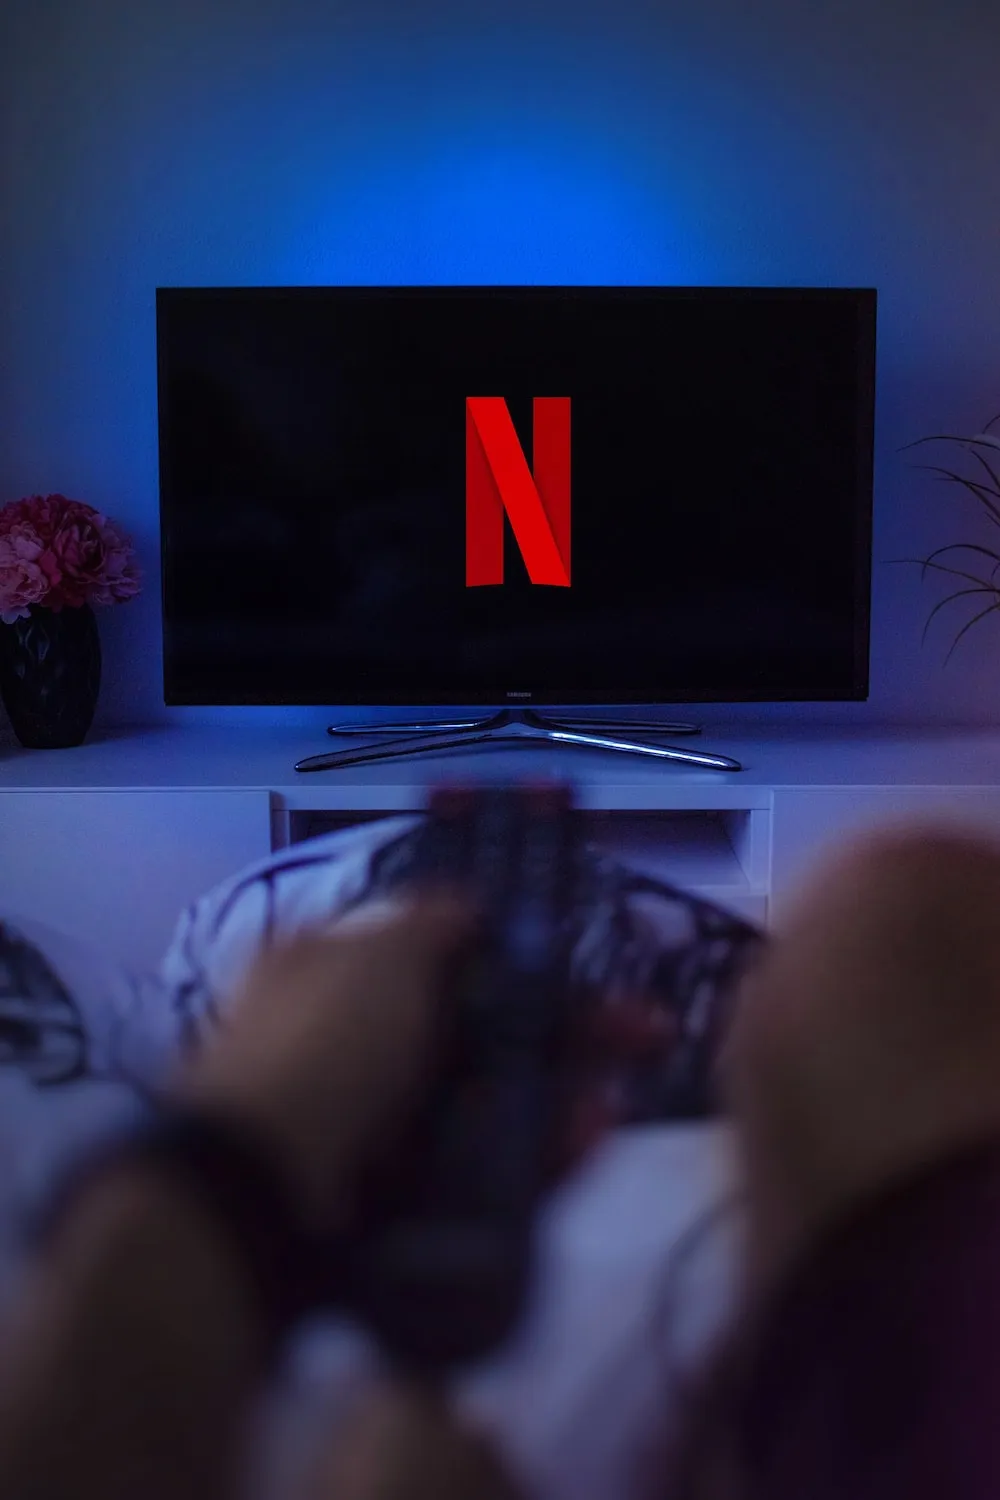 Společnost Netflix údajně zvažuje, že si bude účtovat 7 až 9 dolarů měsíčně za předplatné podporované reklamou, což je zhruba polovina ceny jejího nejoblíbenějšího standardního tarifu